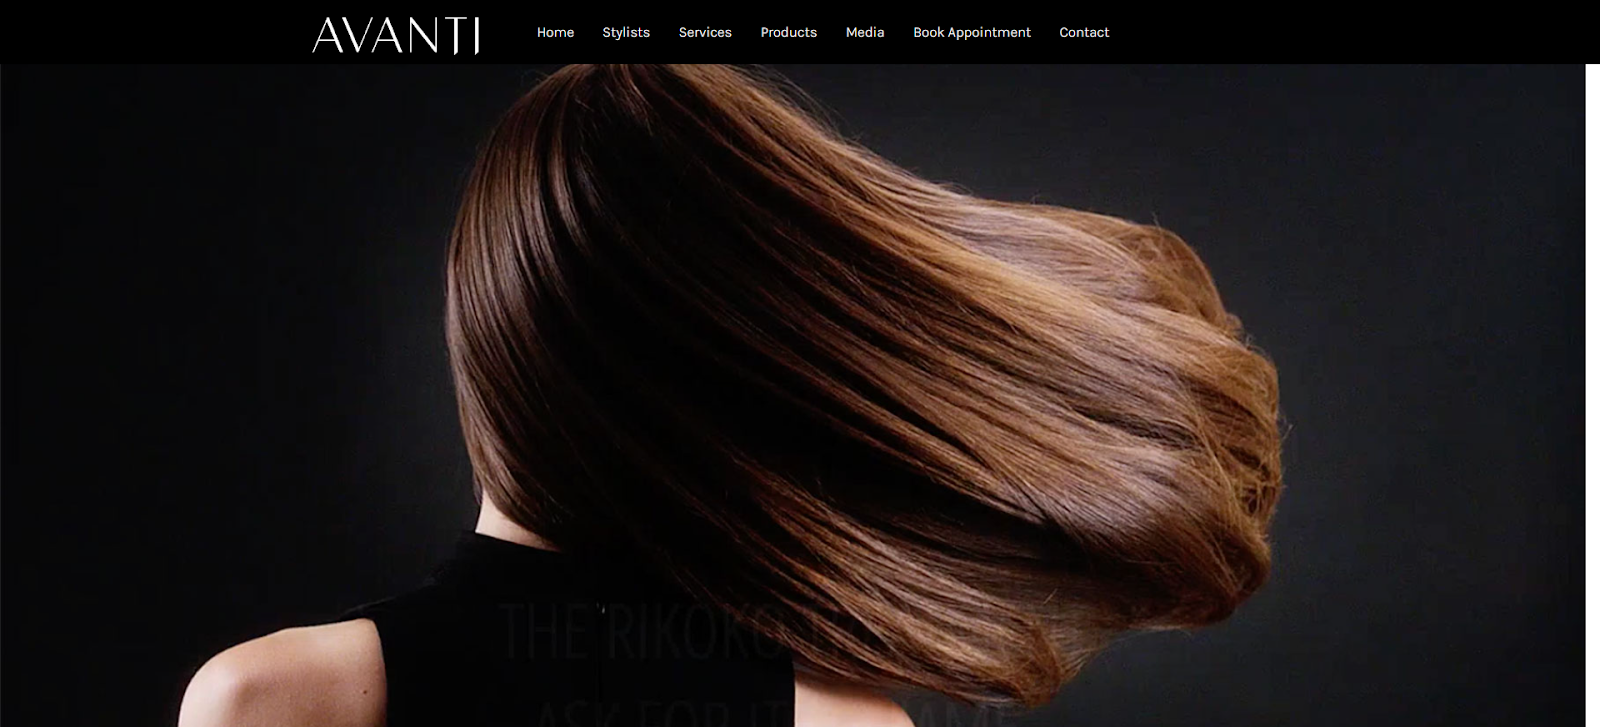 Avanti Salon, hair salon website